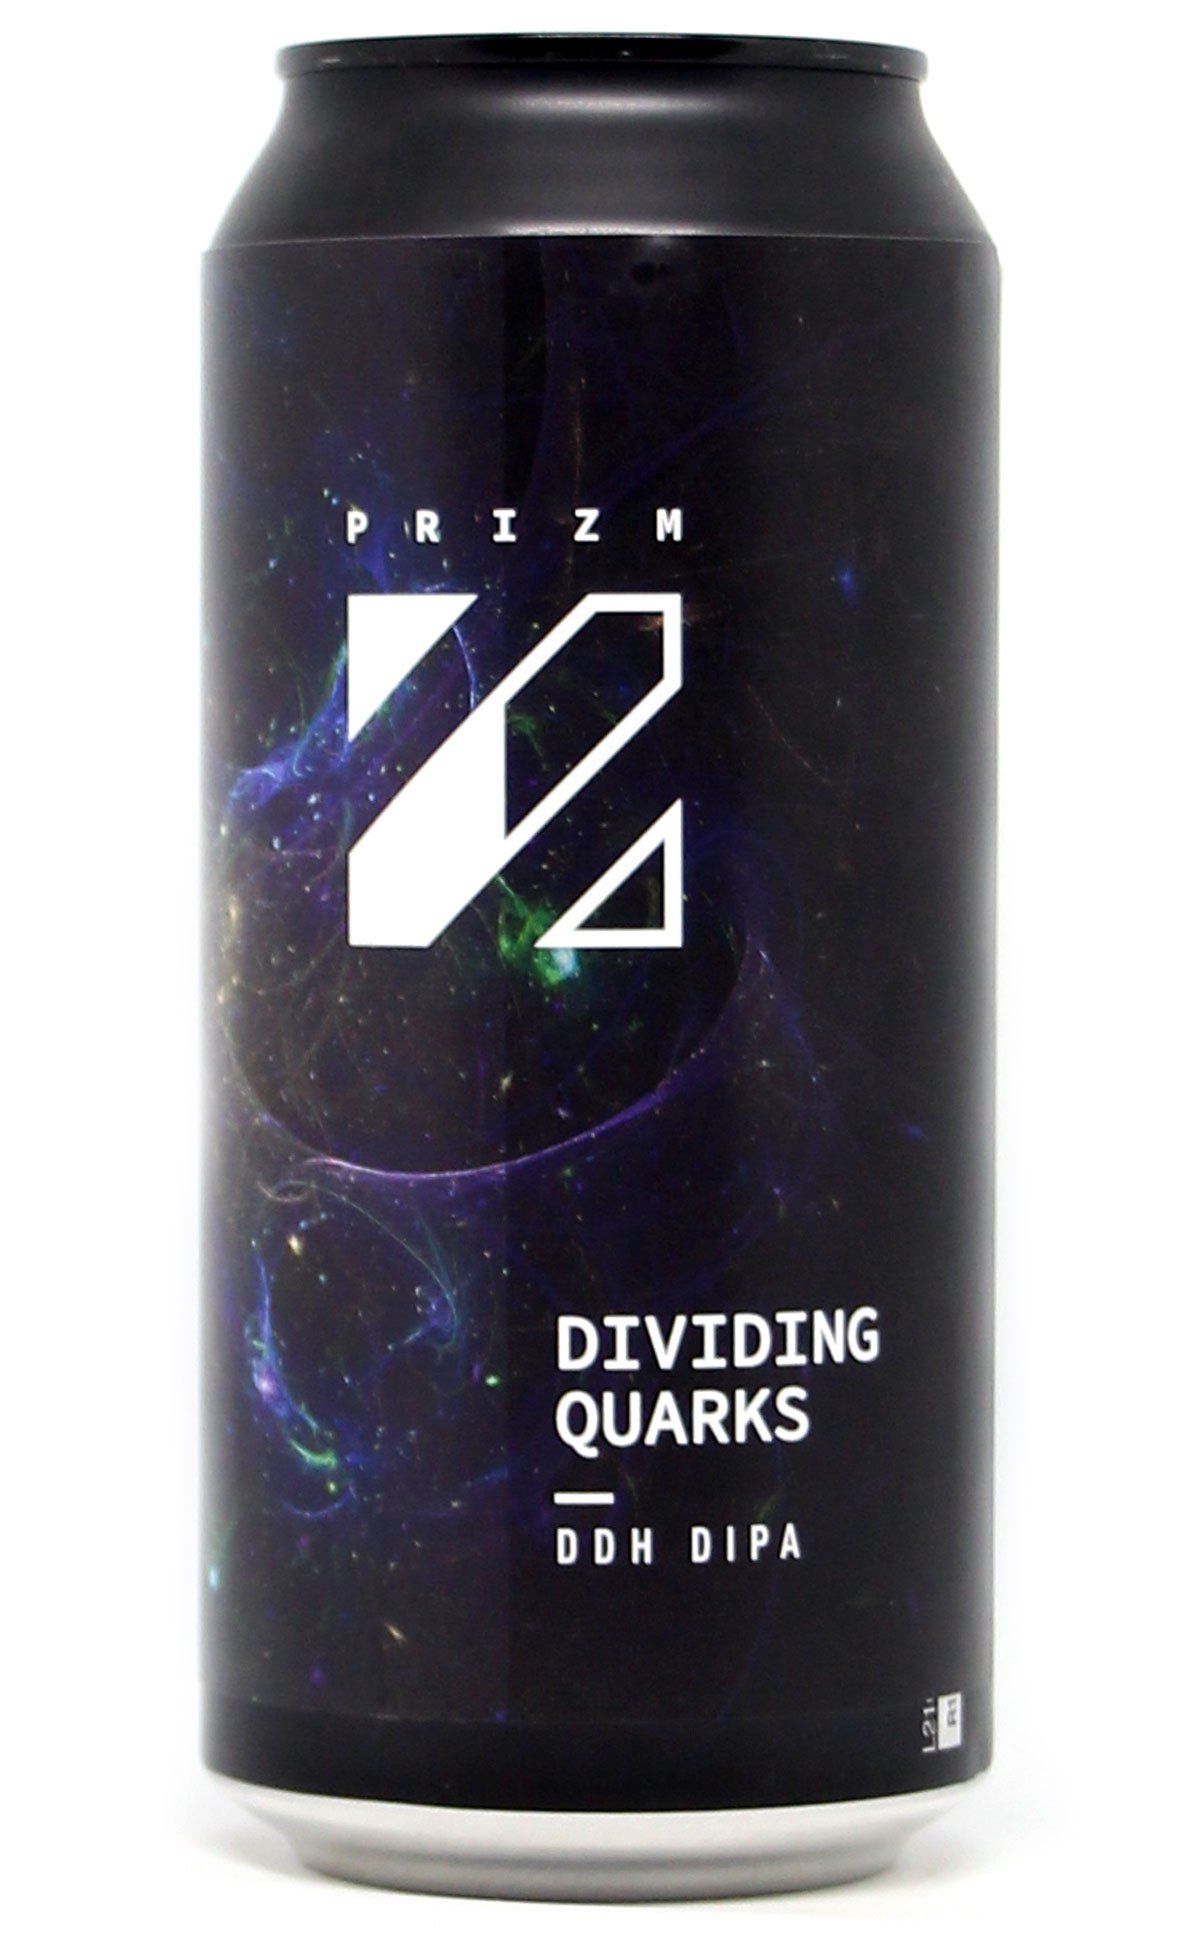 Dividing Quarks